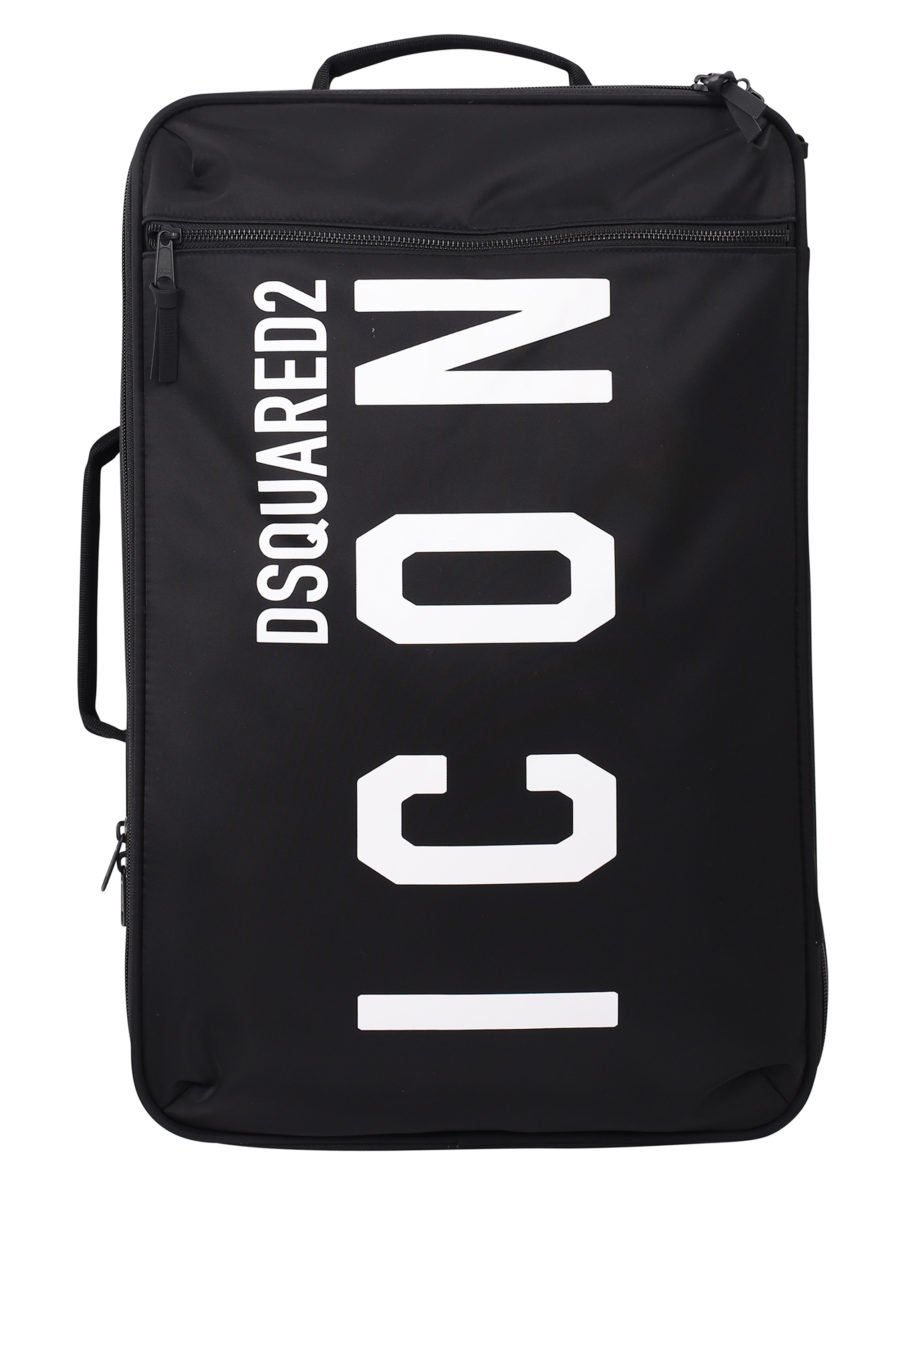 Valise à roulettes noire avec logo "icon" - IMG 9703